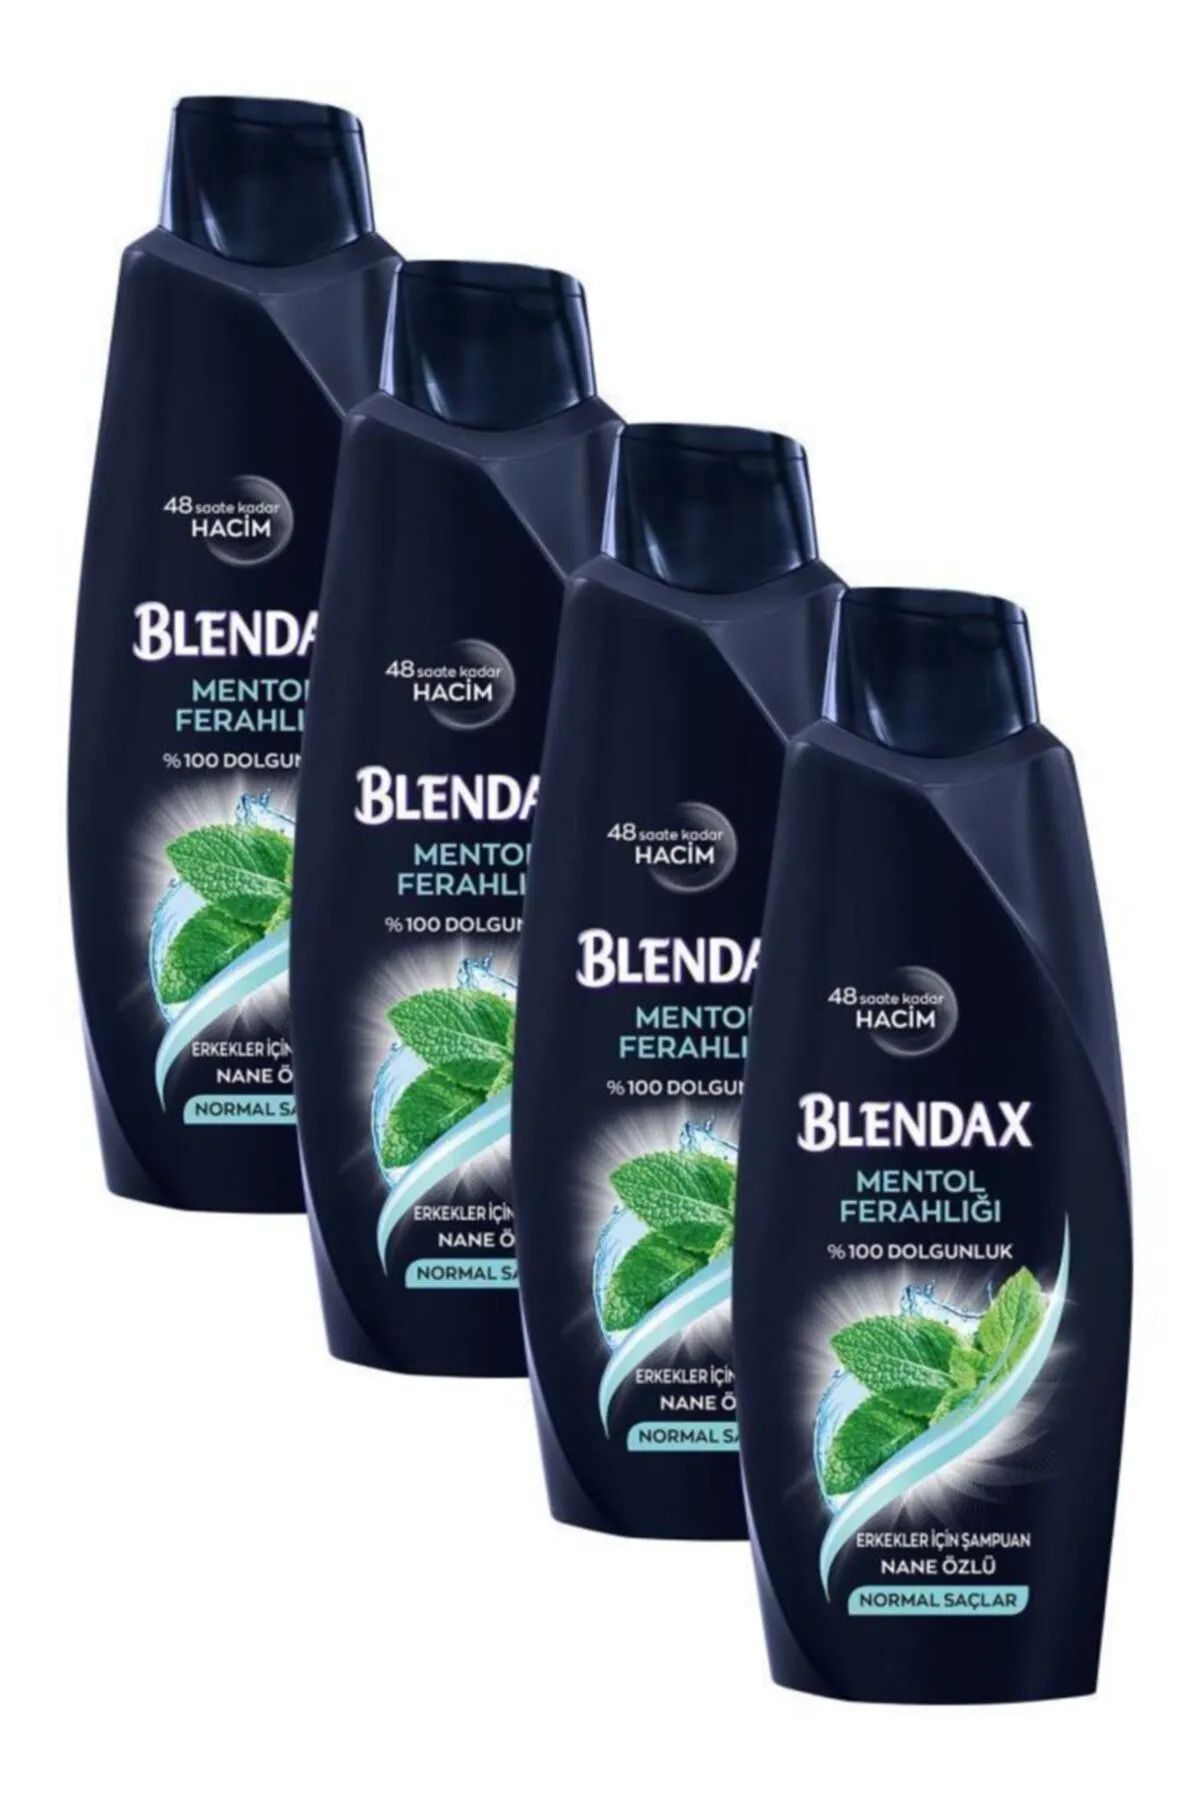 Blendax Erkekler İçin Mentollü Şampuan 500 ml * 4 ADET